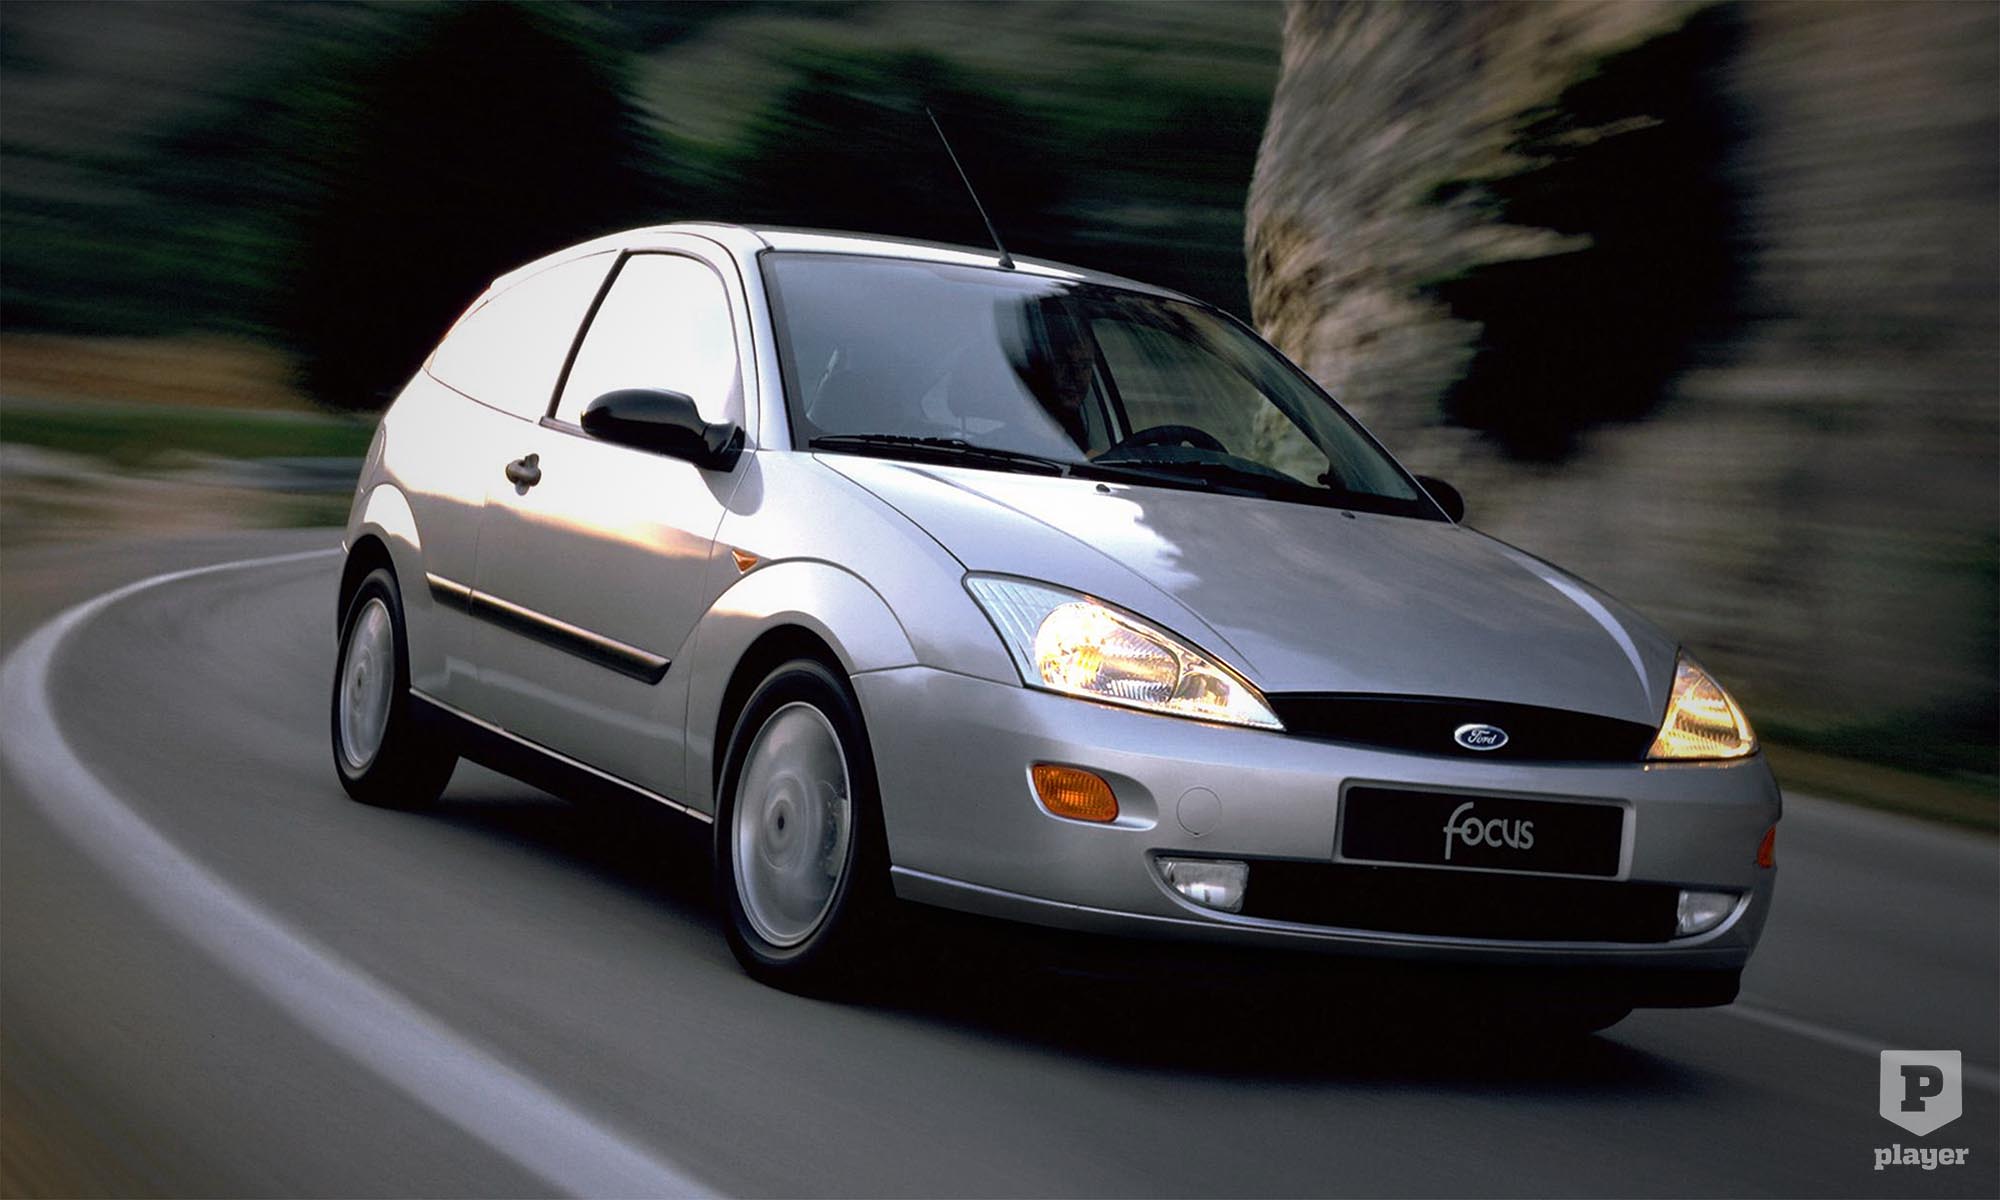 Первый хэтчбек. Ford Focus 1998. Форд фокус 1998 хэтчбек. Ford Focus 1998-2005. Ford Focus 1998 хэтчбек.